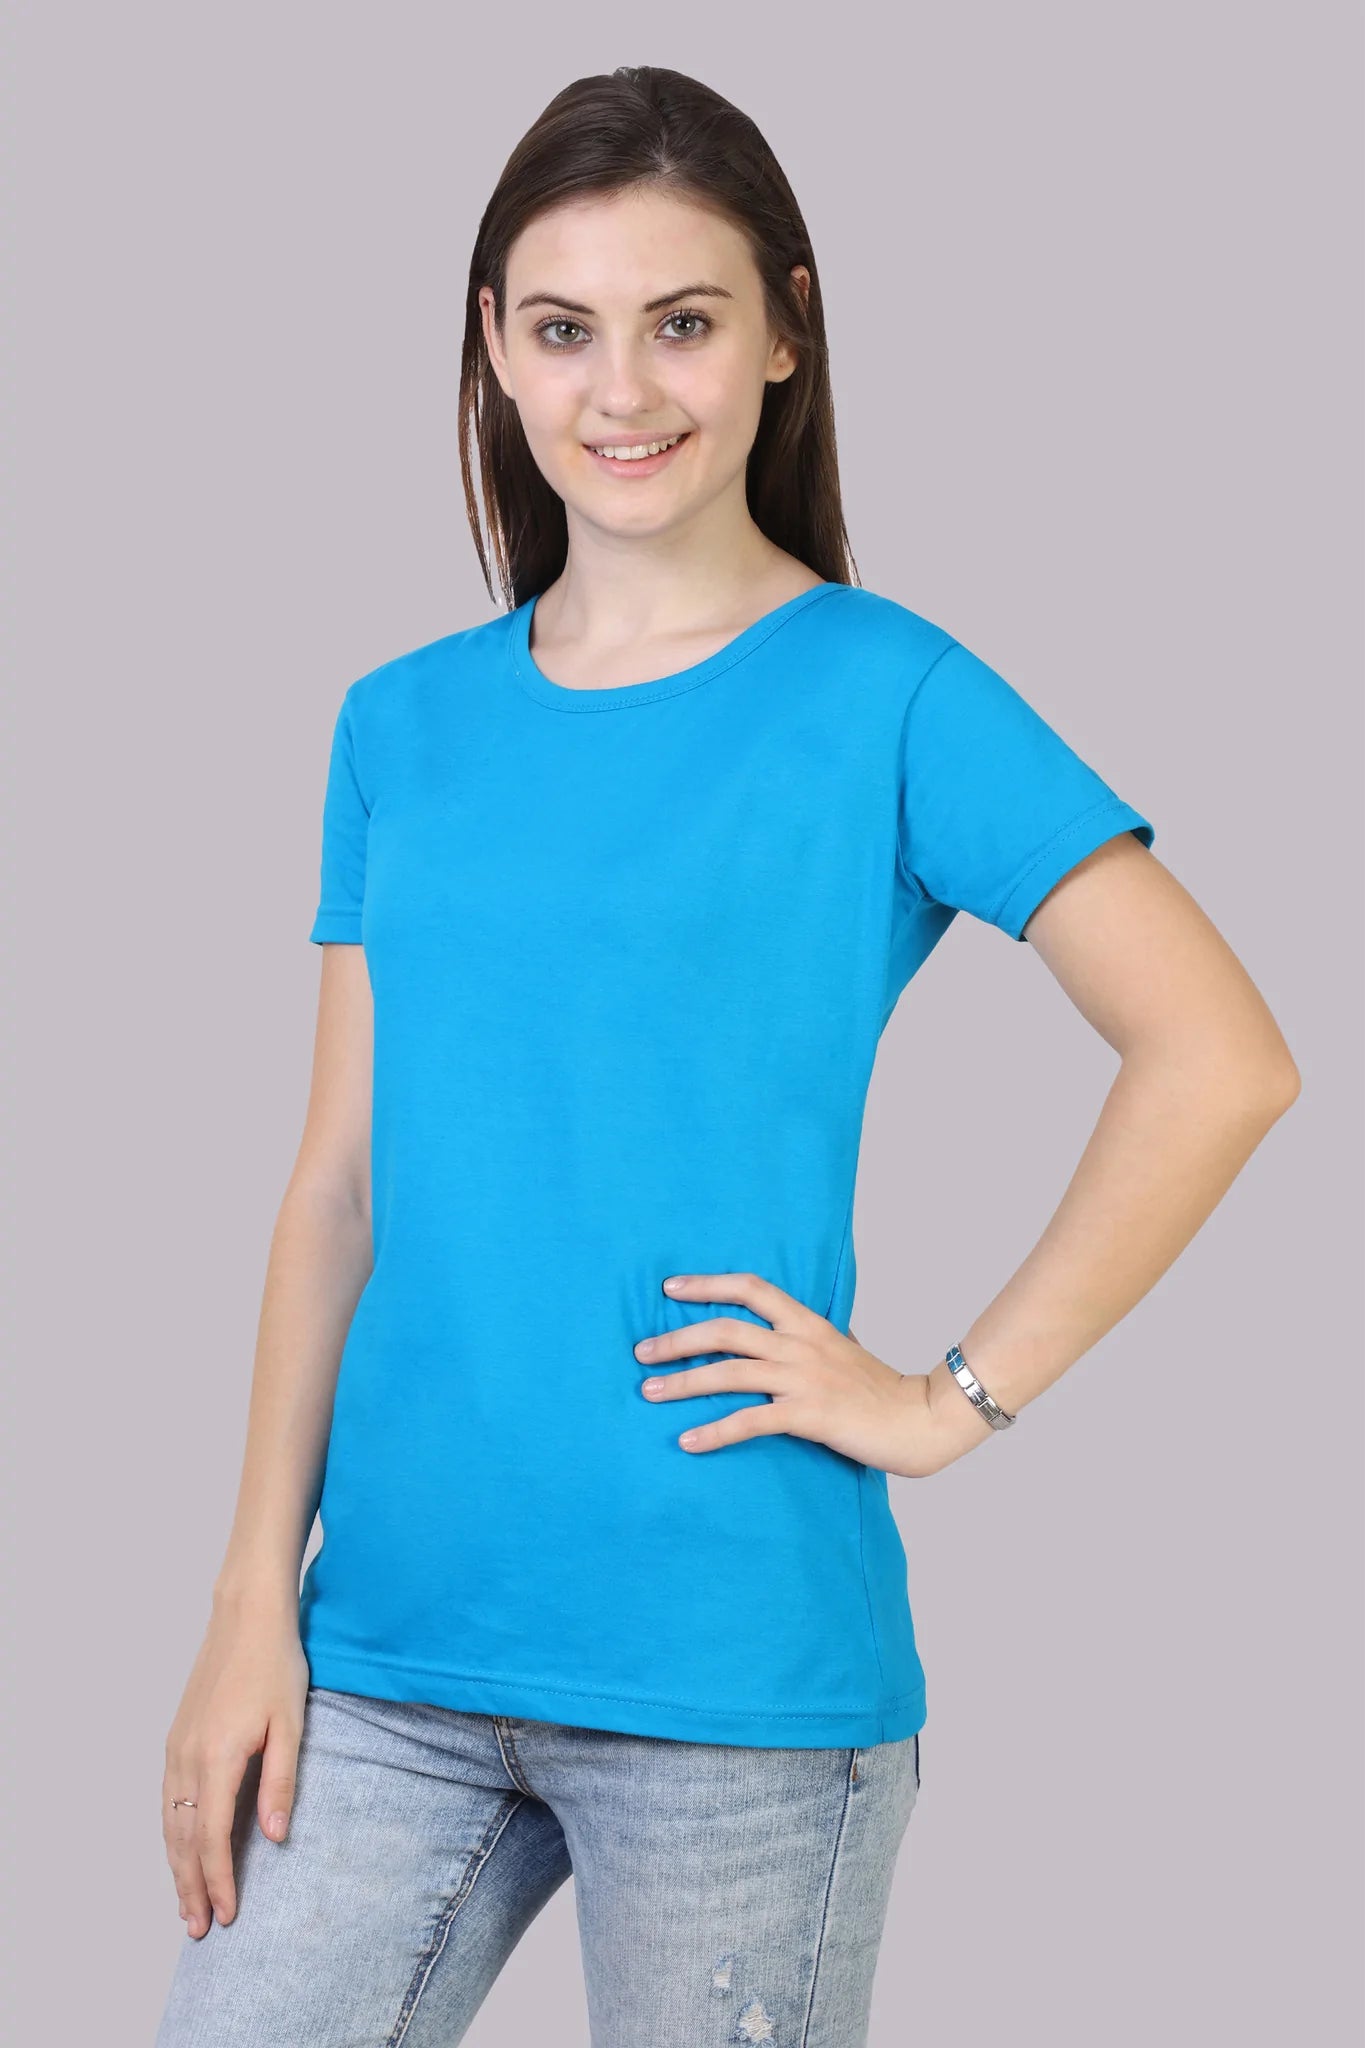 Women's Cotton Plain Round Neck Half Sleeve Blue Color T-Shirt